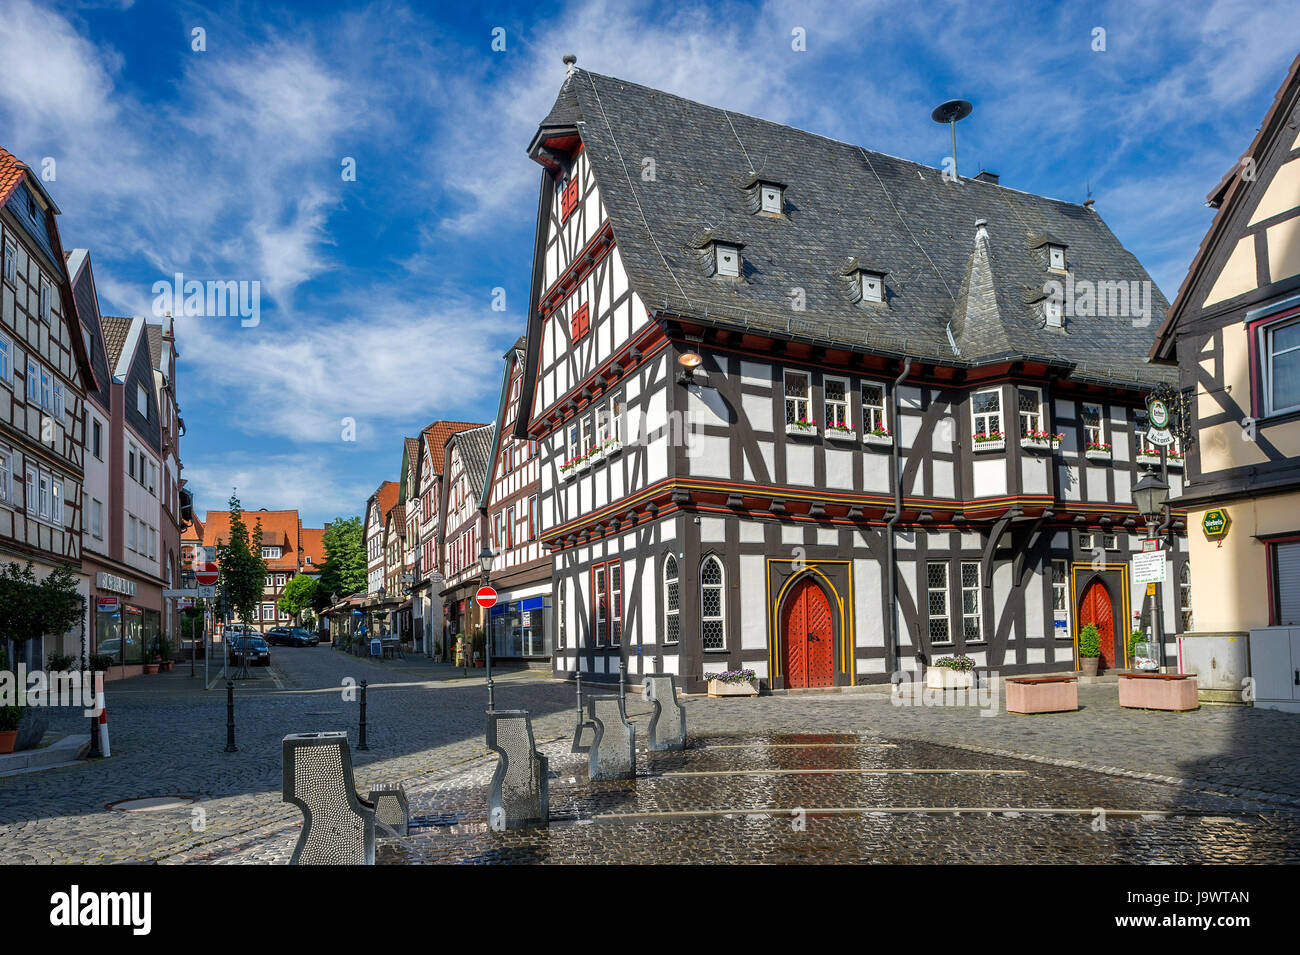 Il municipio storico, stile tardo gotico a struttura mista in legno e muratura edificio, Schotten, Hesse, Germania Foto Stock